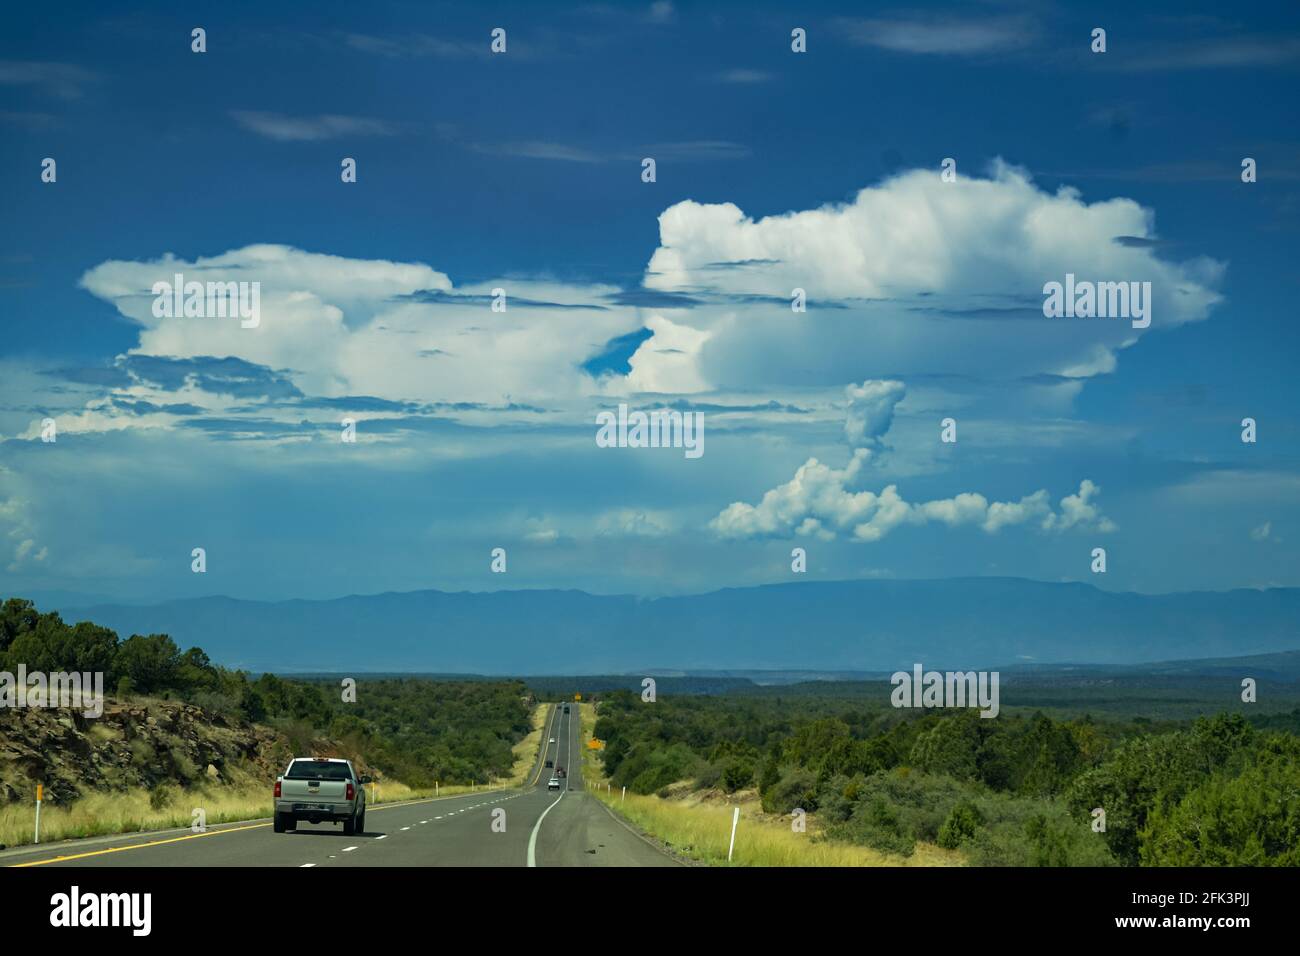 Carretera perfectamente recta que conduce al horizonte y a una enorme nube de truenos en el cielo Foto de stock